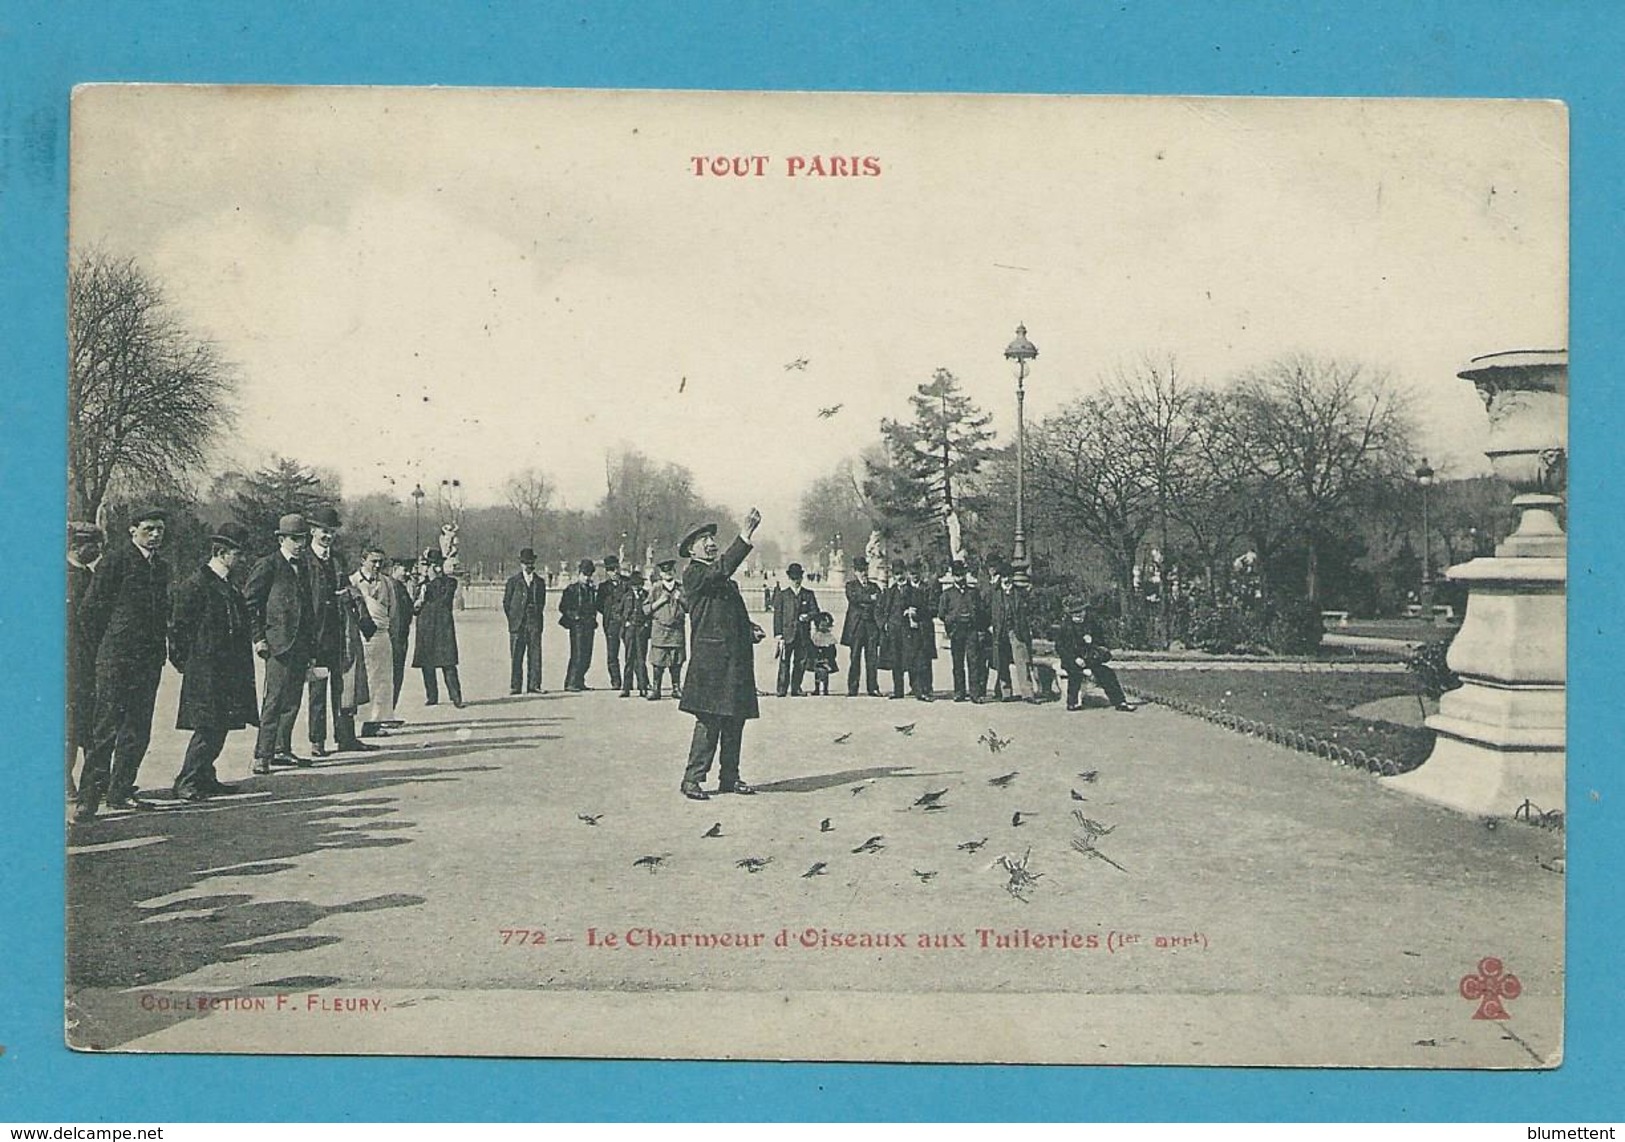 CPA TOUT PARIS 772 - Le Charmeur D'oiseaux Aux Tuileries (1er Arrt.) Edition FLEURY - Paris (01)